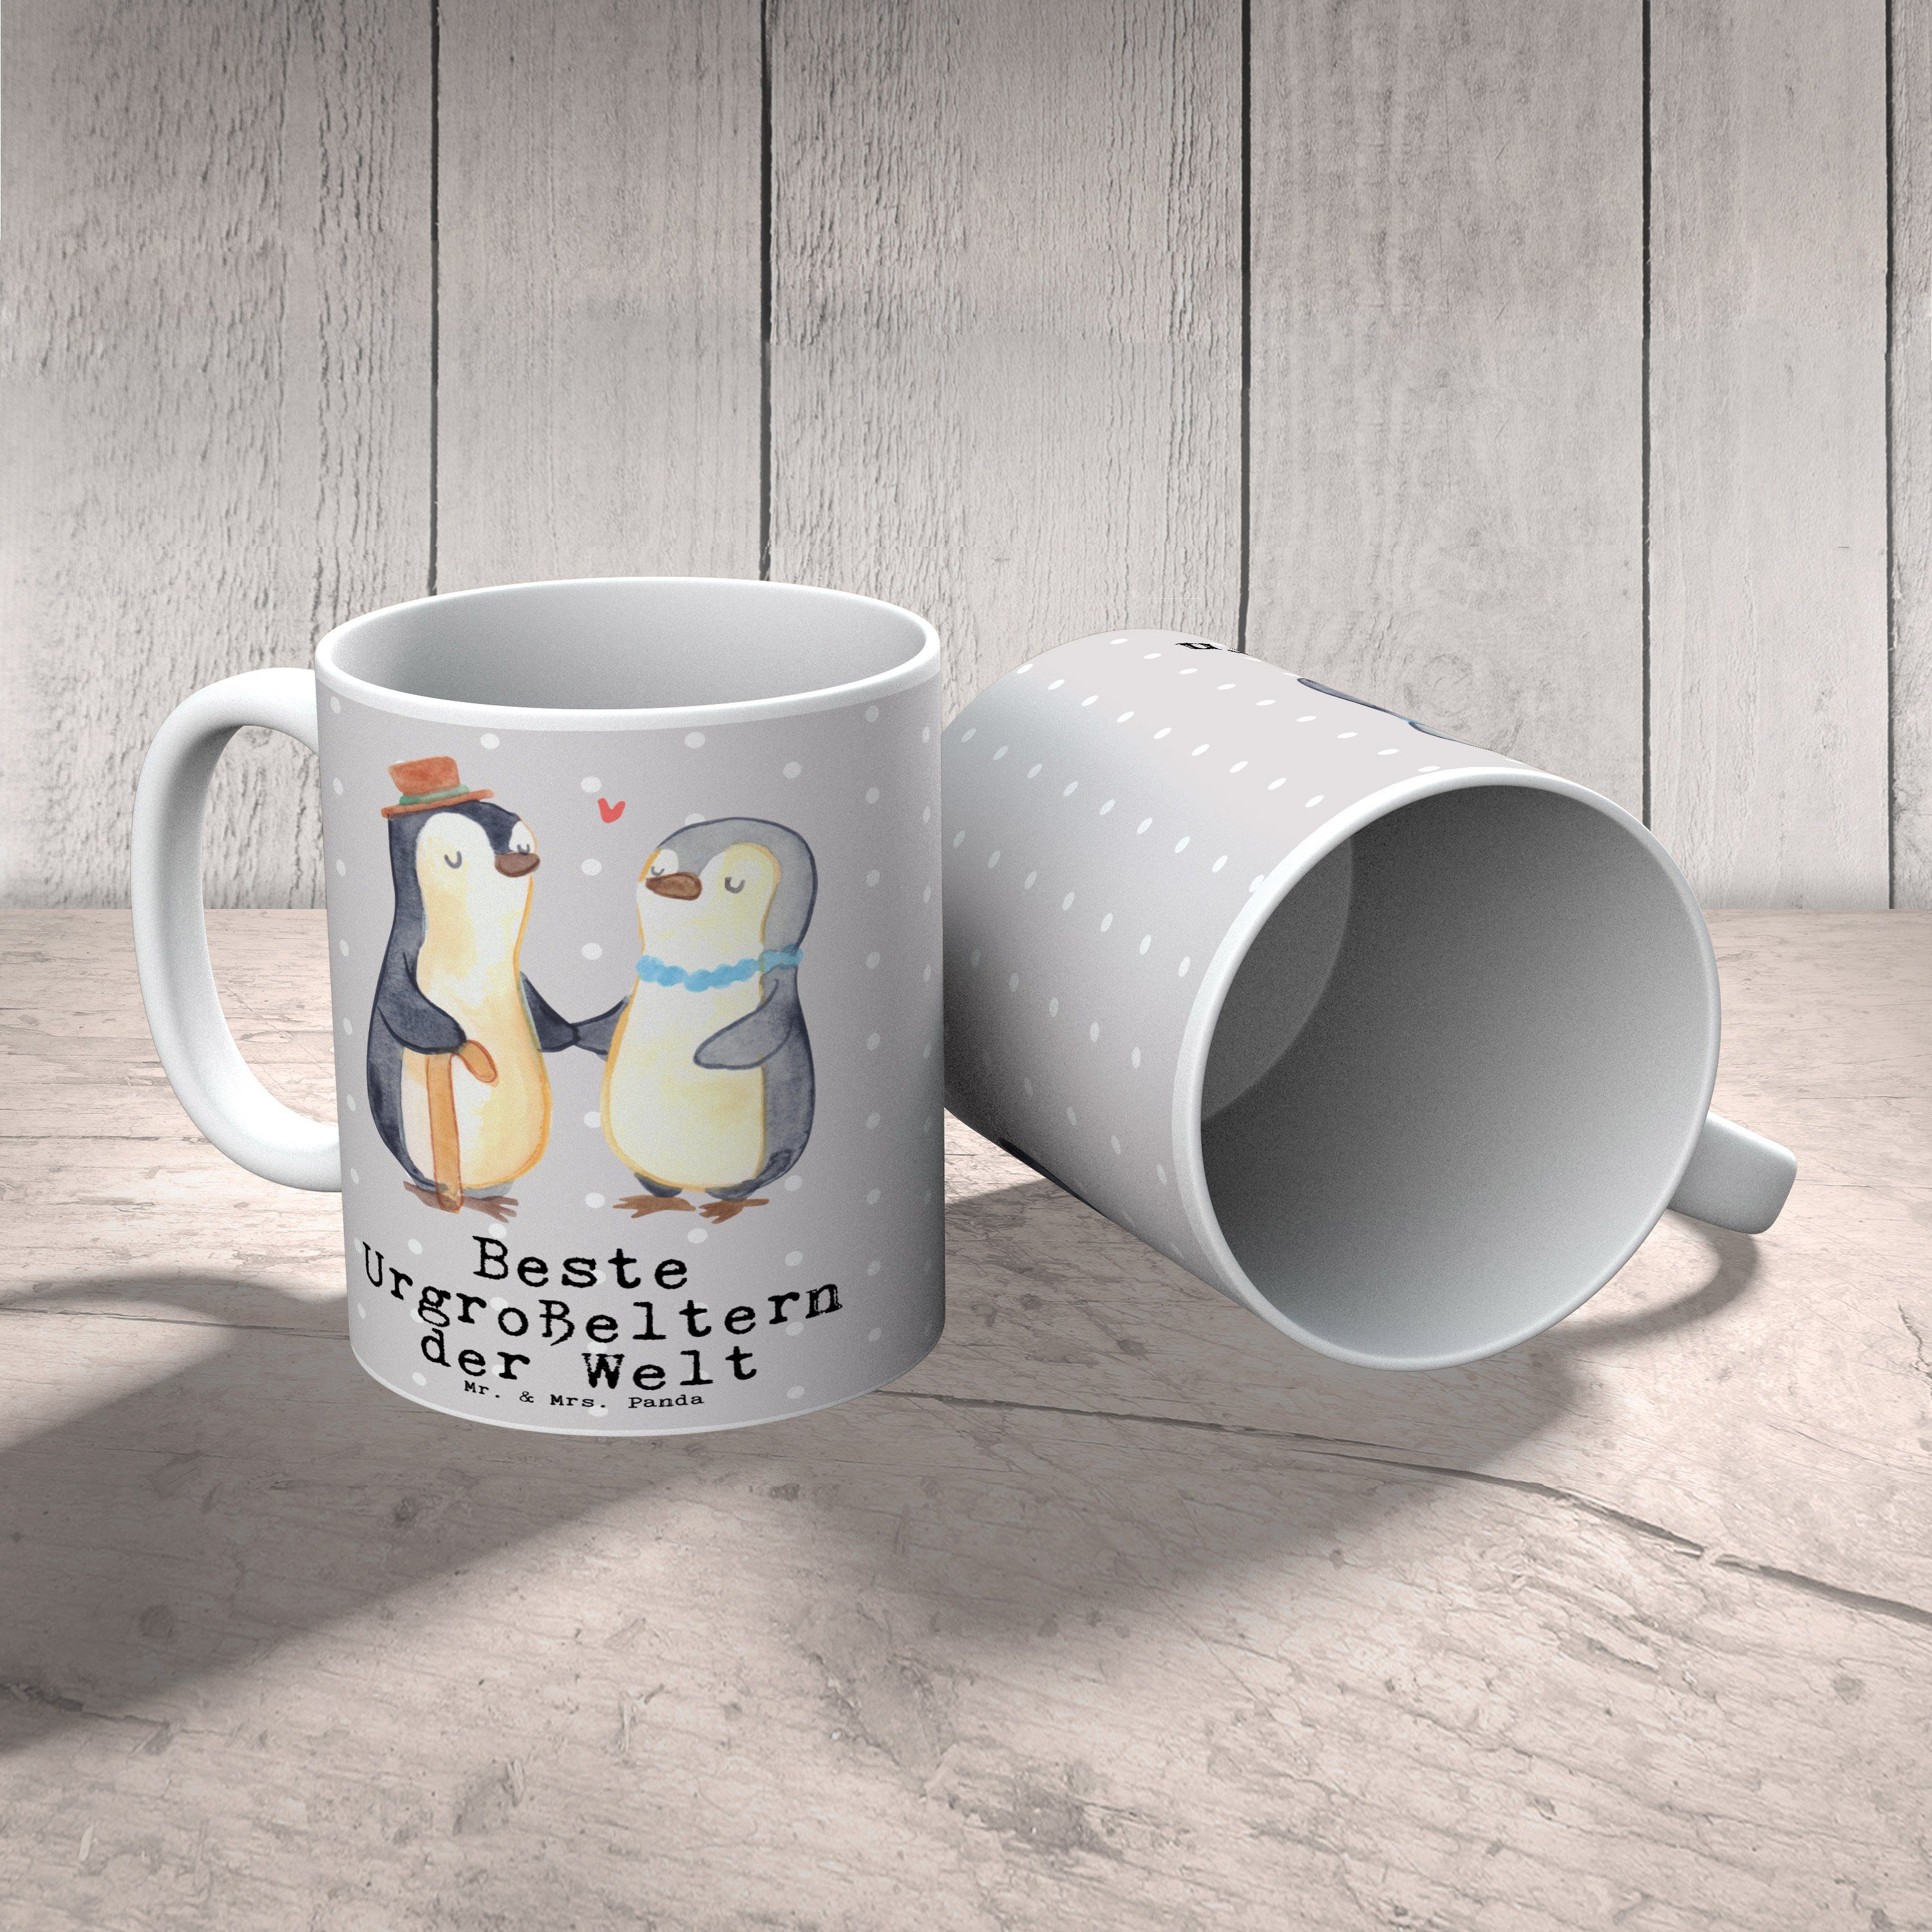 Welt Geschenk, Mrs. Tasse Mr. Beste Grau Keramik Gesche, der Pinguin & Pastell - Urgroßeltern Panda -